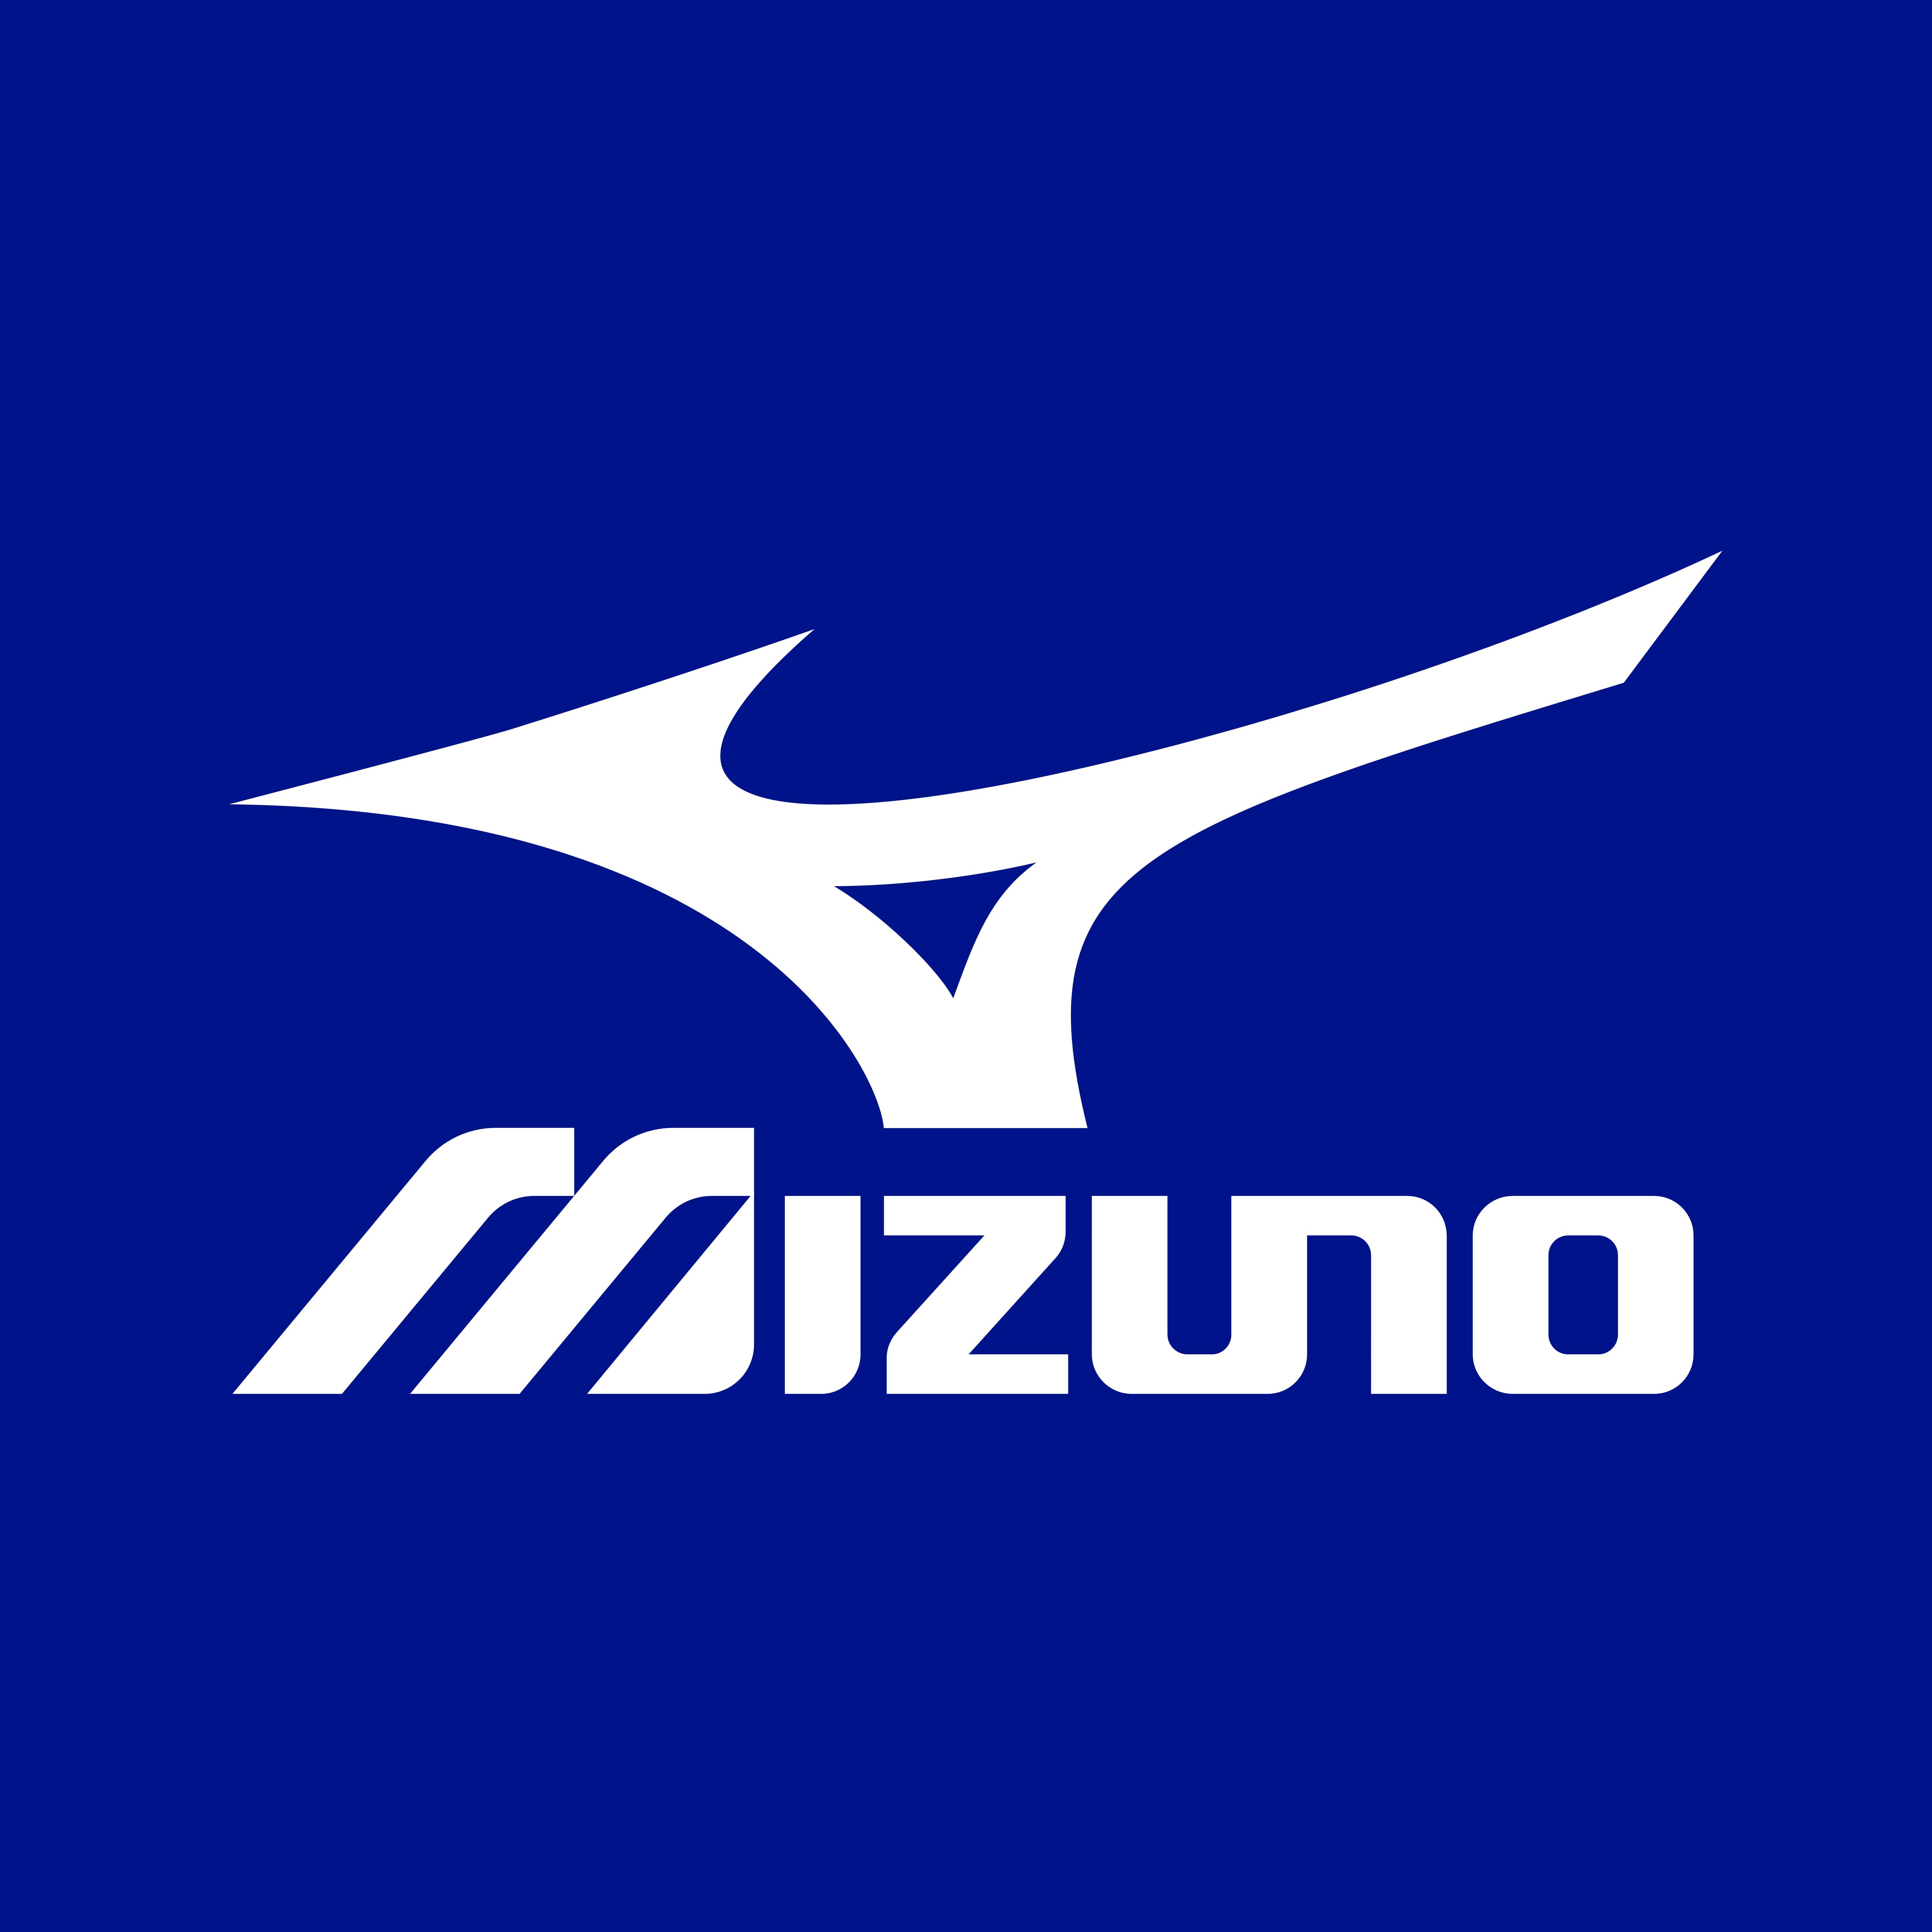 Mizuno Logo Vector